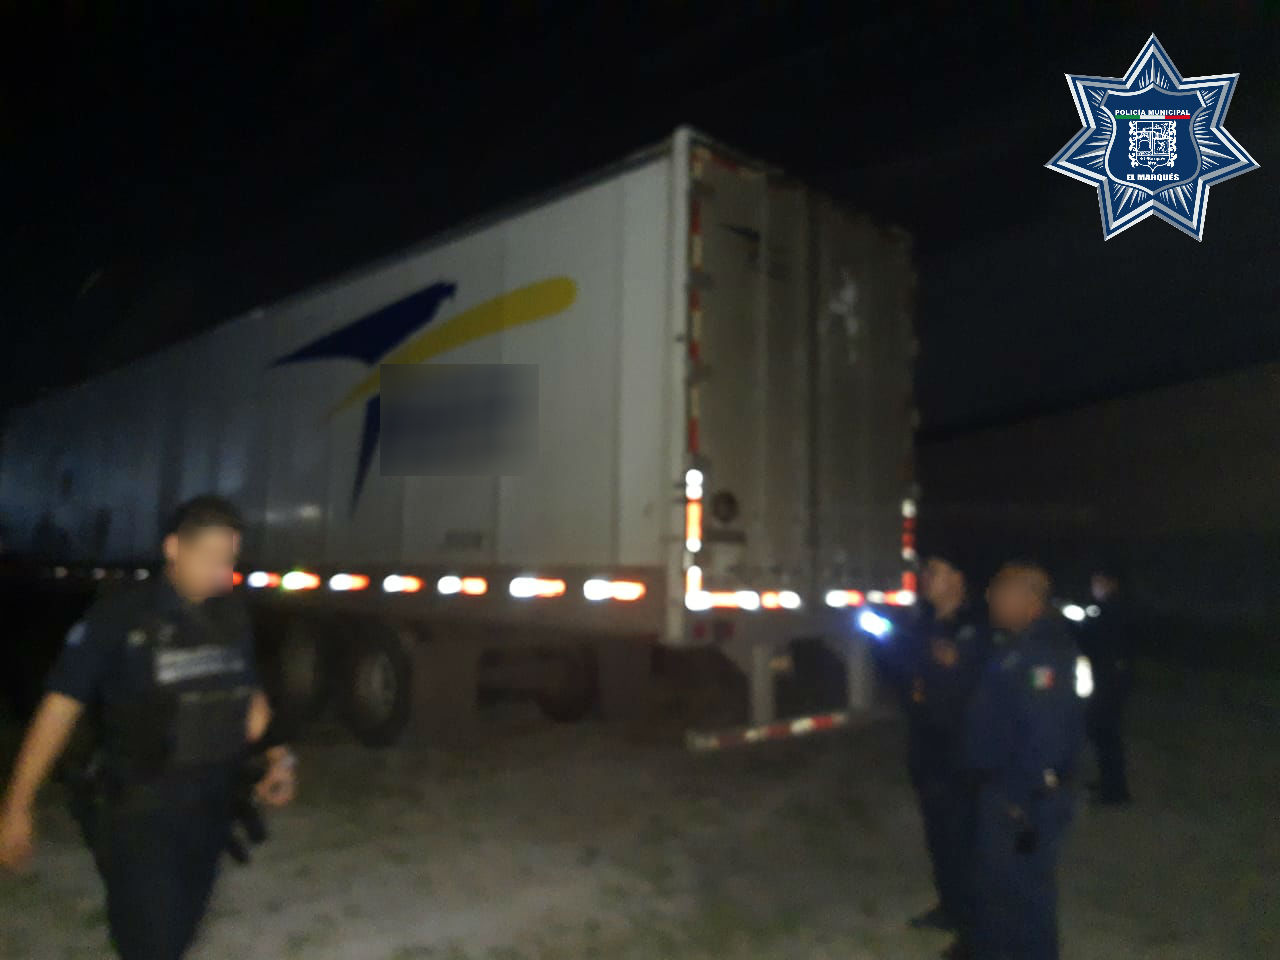  Policías de El Marqués resguardan camión con reporte de robo